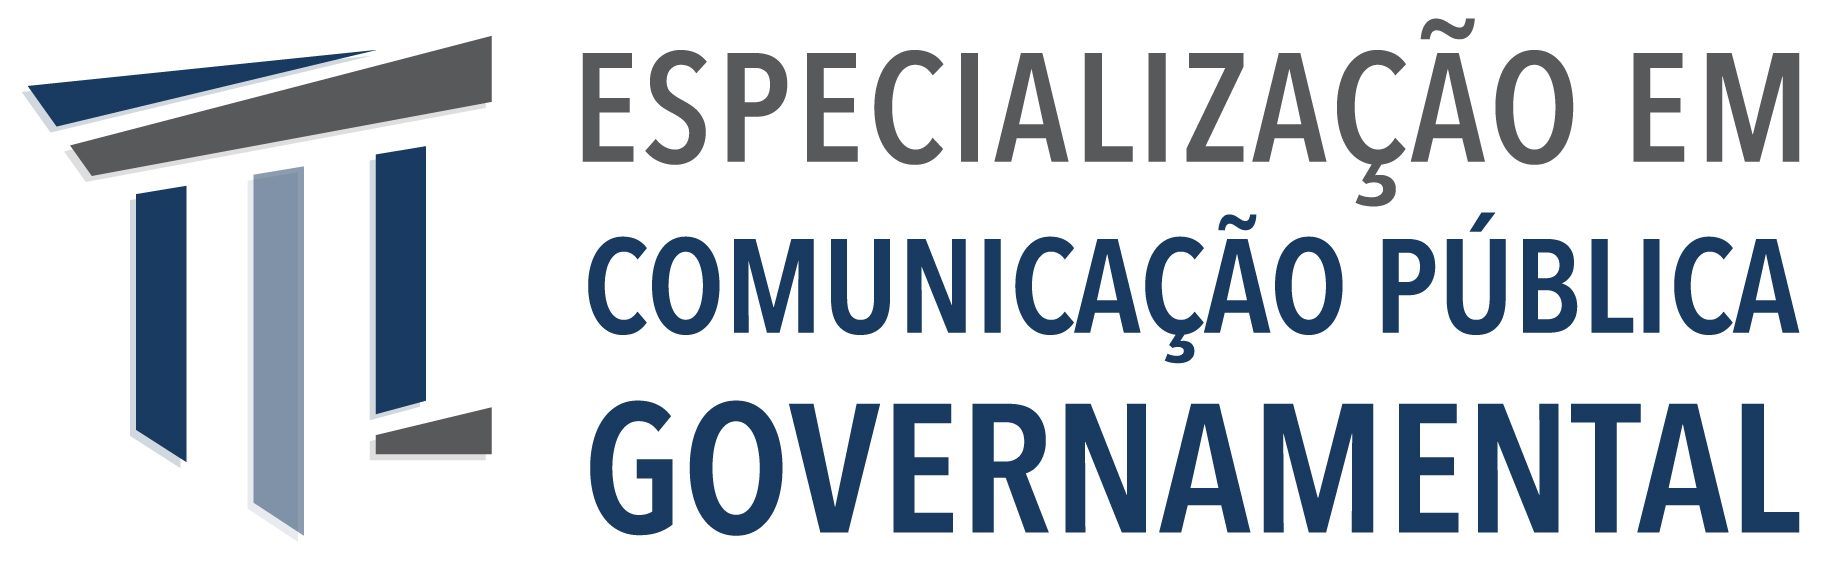 Especialização em Comunicação Pública Governamental